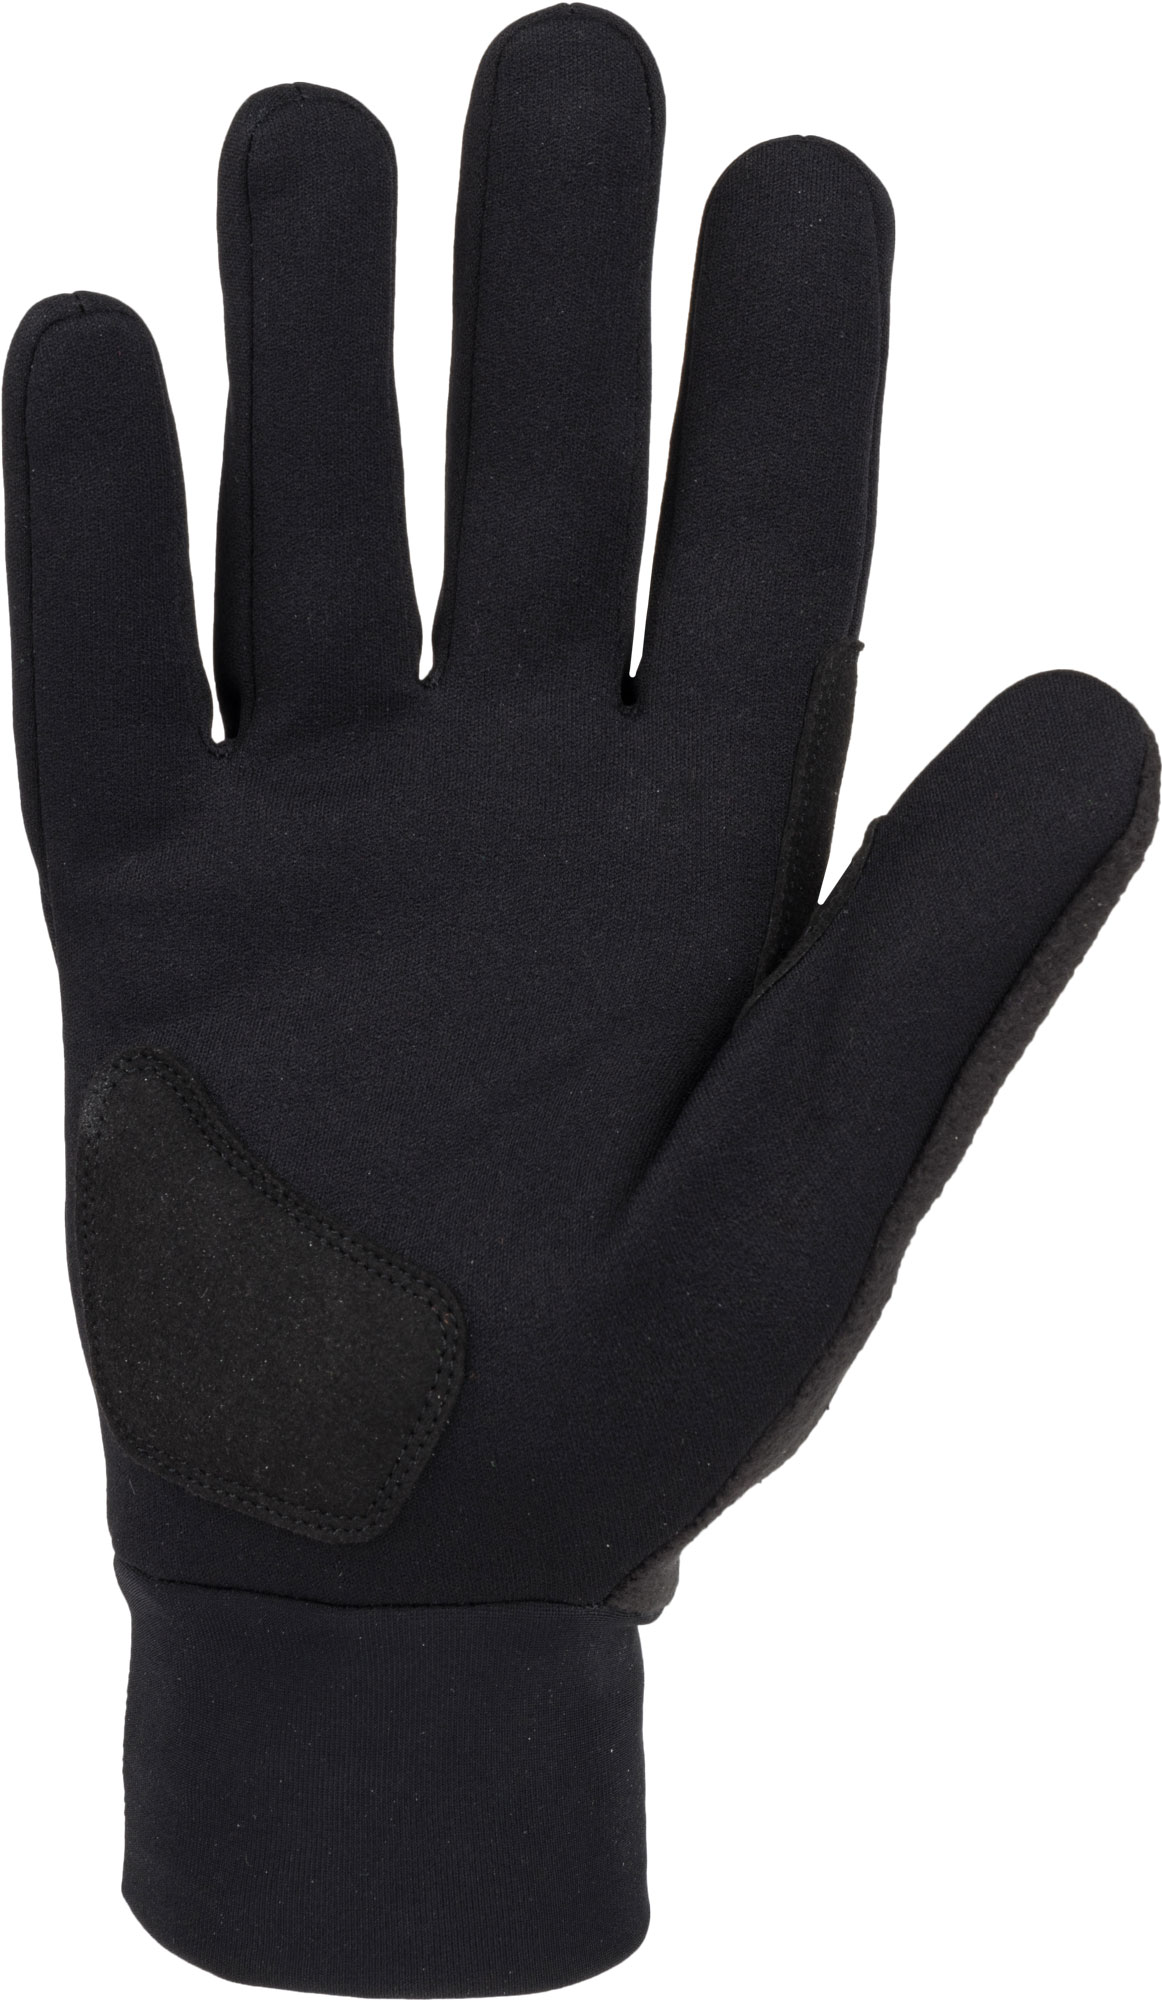 Winter gloves